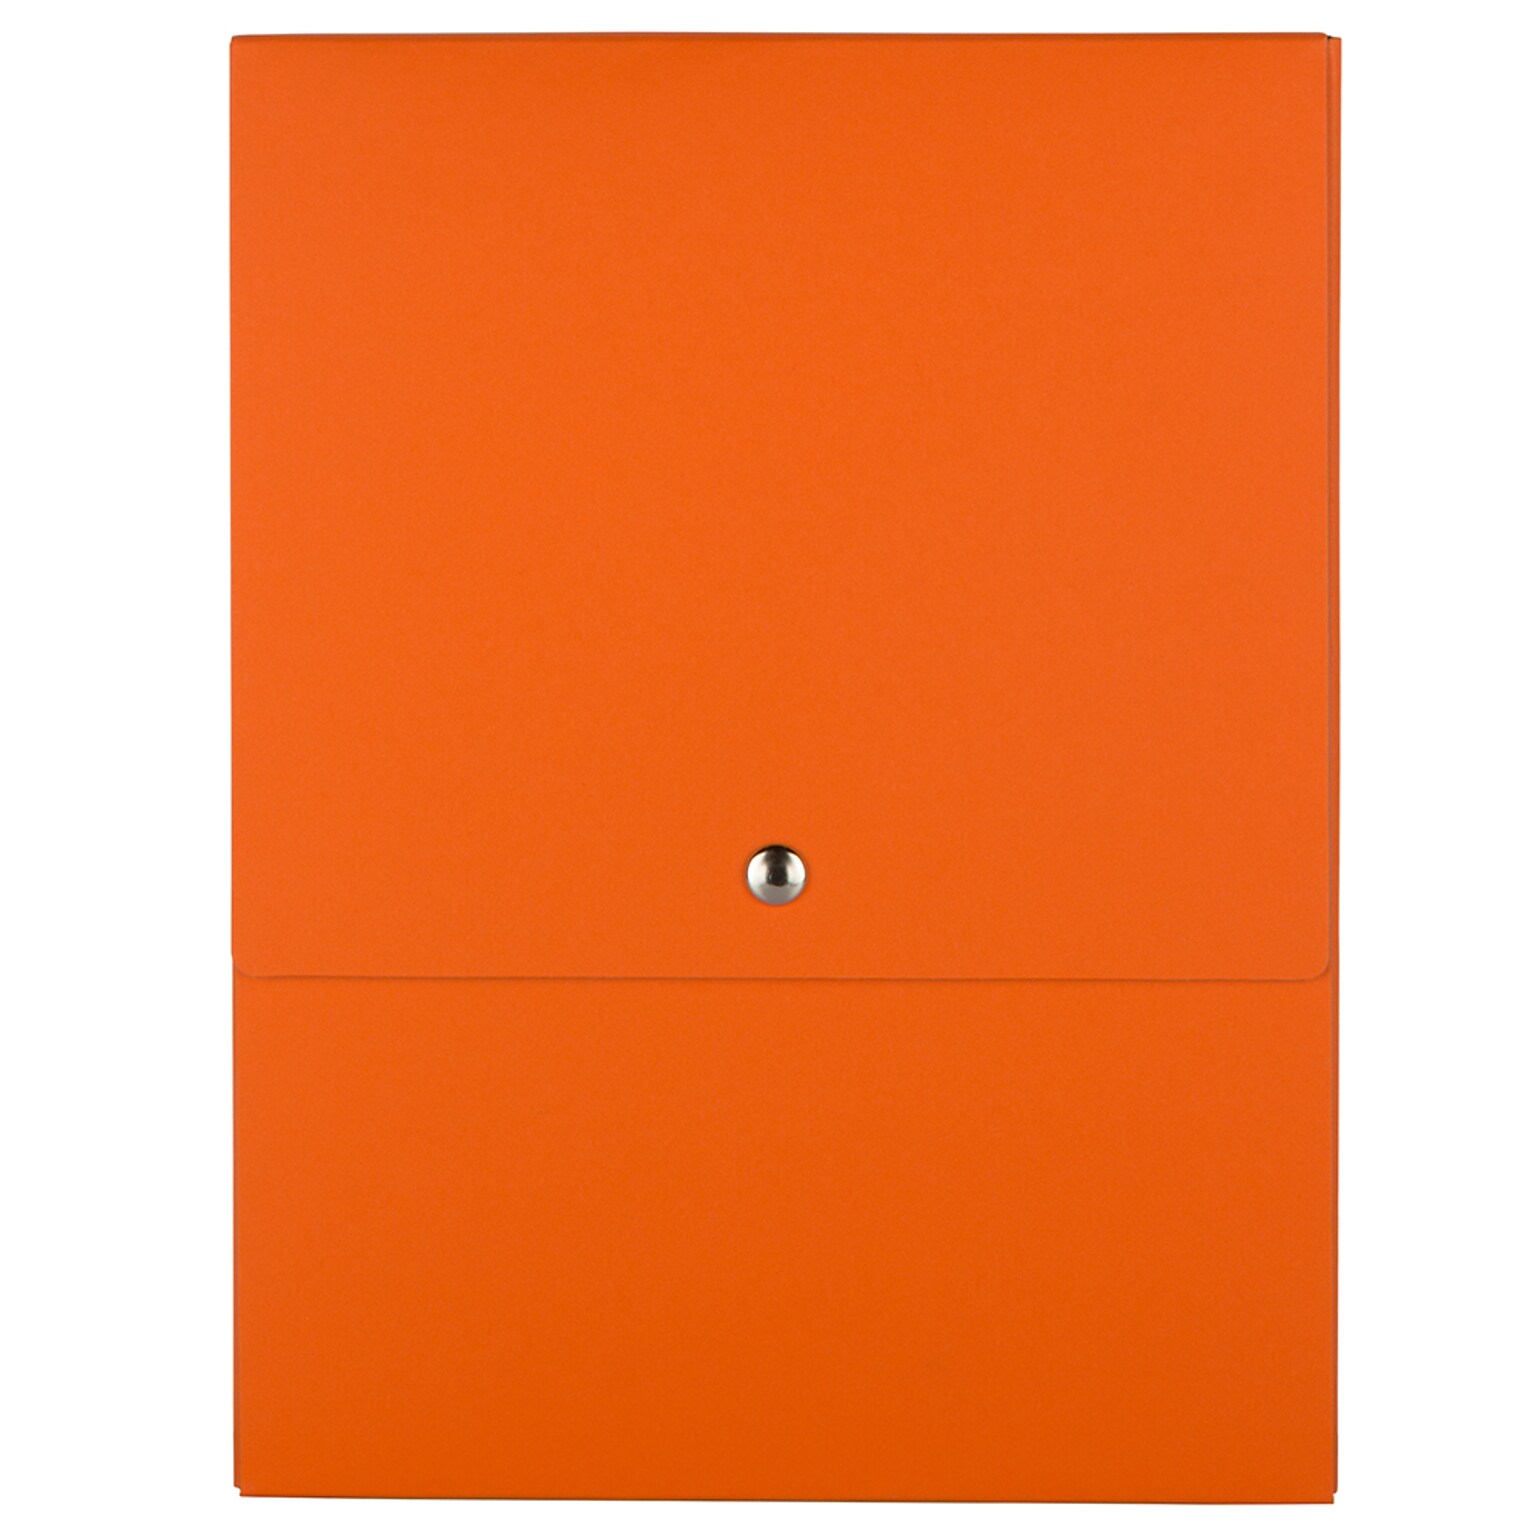 JAM PAPER Vertical Snap Closure Portfolio, 12 1/8 x 9 x 1/2, Orange Kraft (90335341)